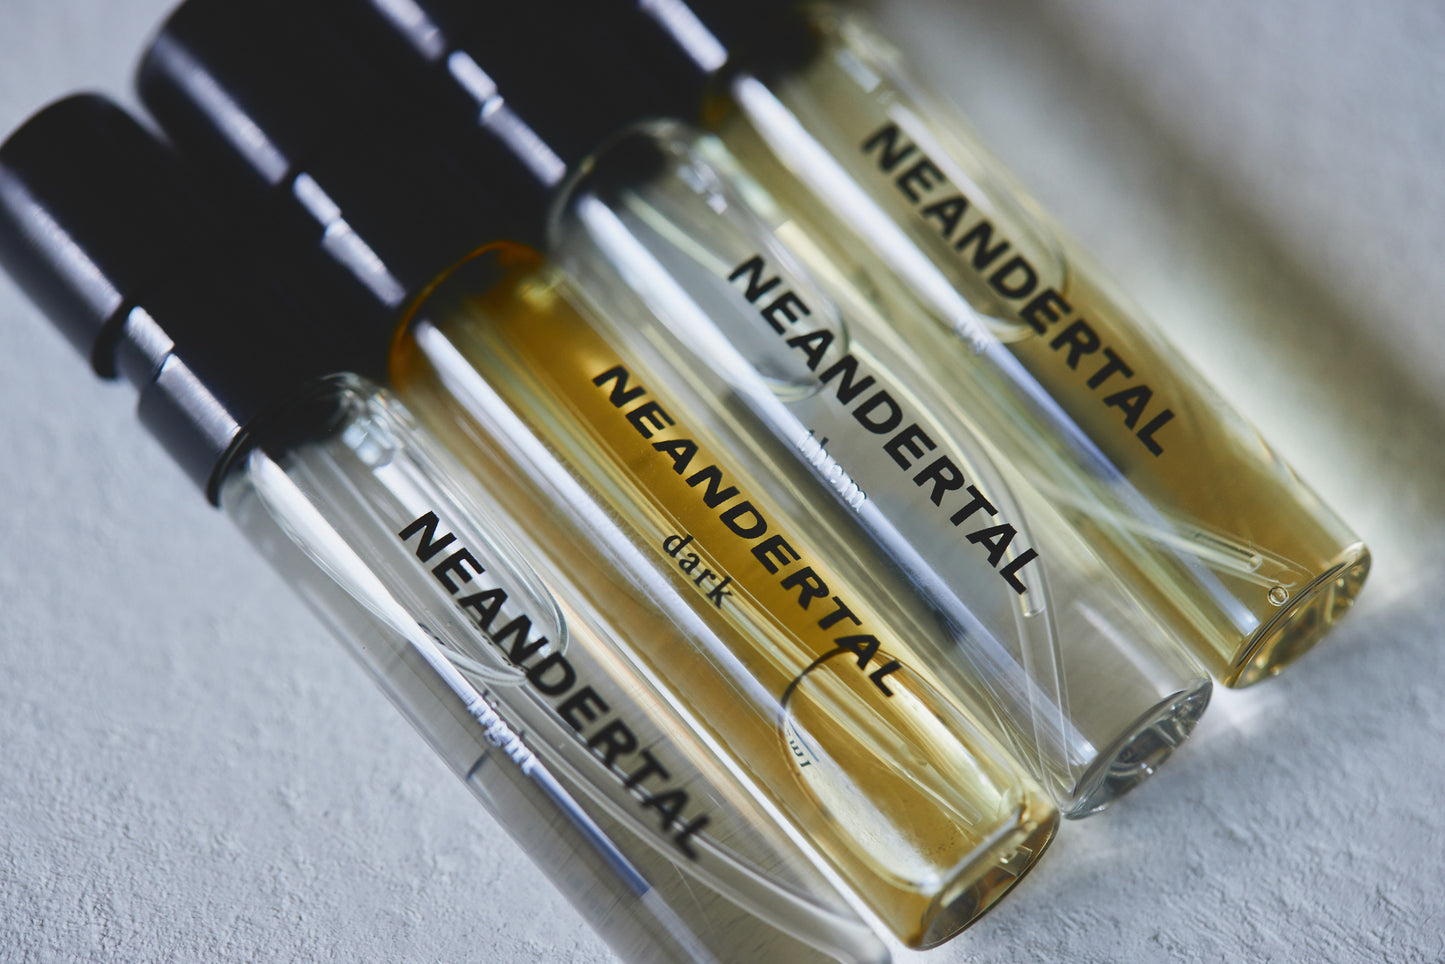 Neandertal eau de parfum sample set